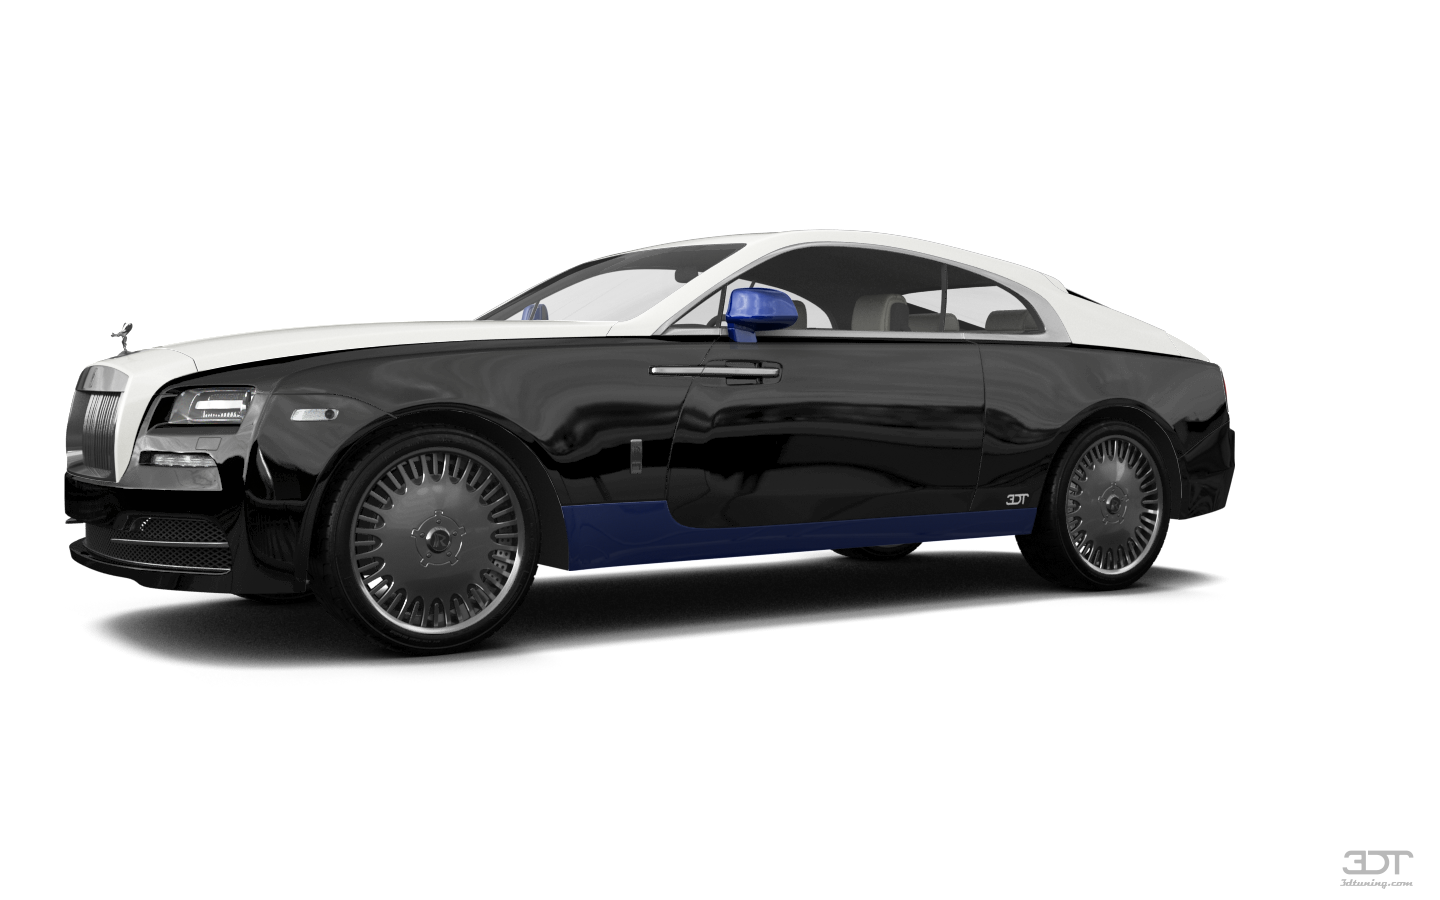 Rolls Royce Wraith 2 Door Coupe 2014 tuning